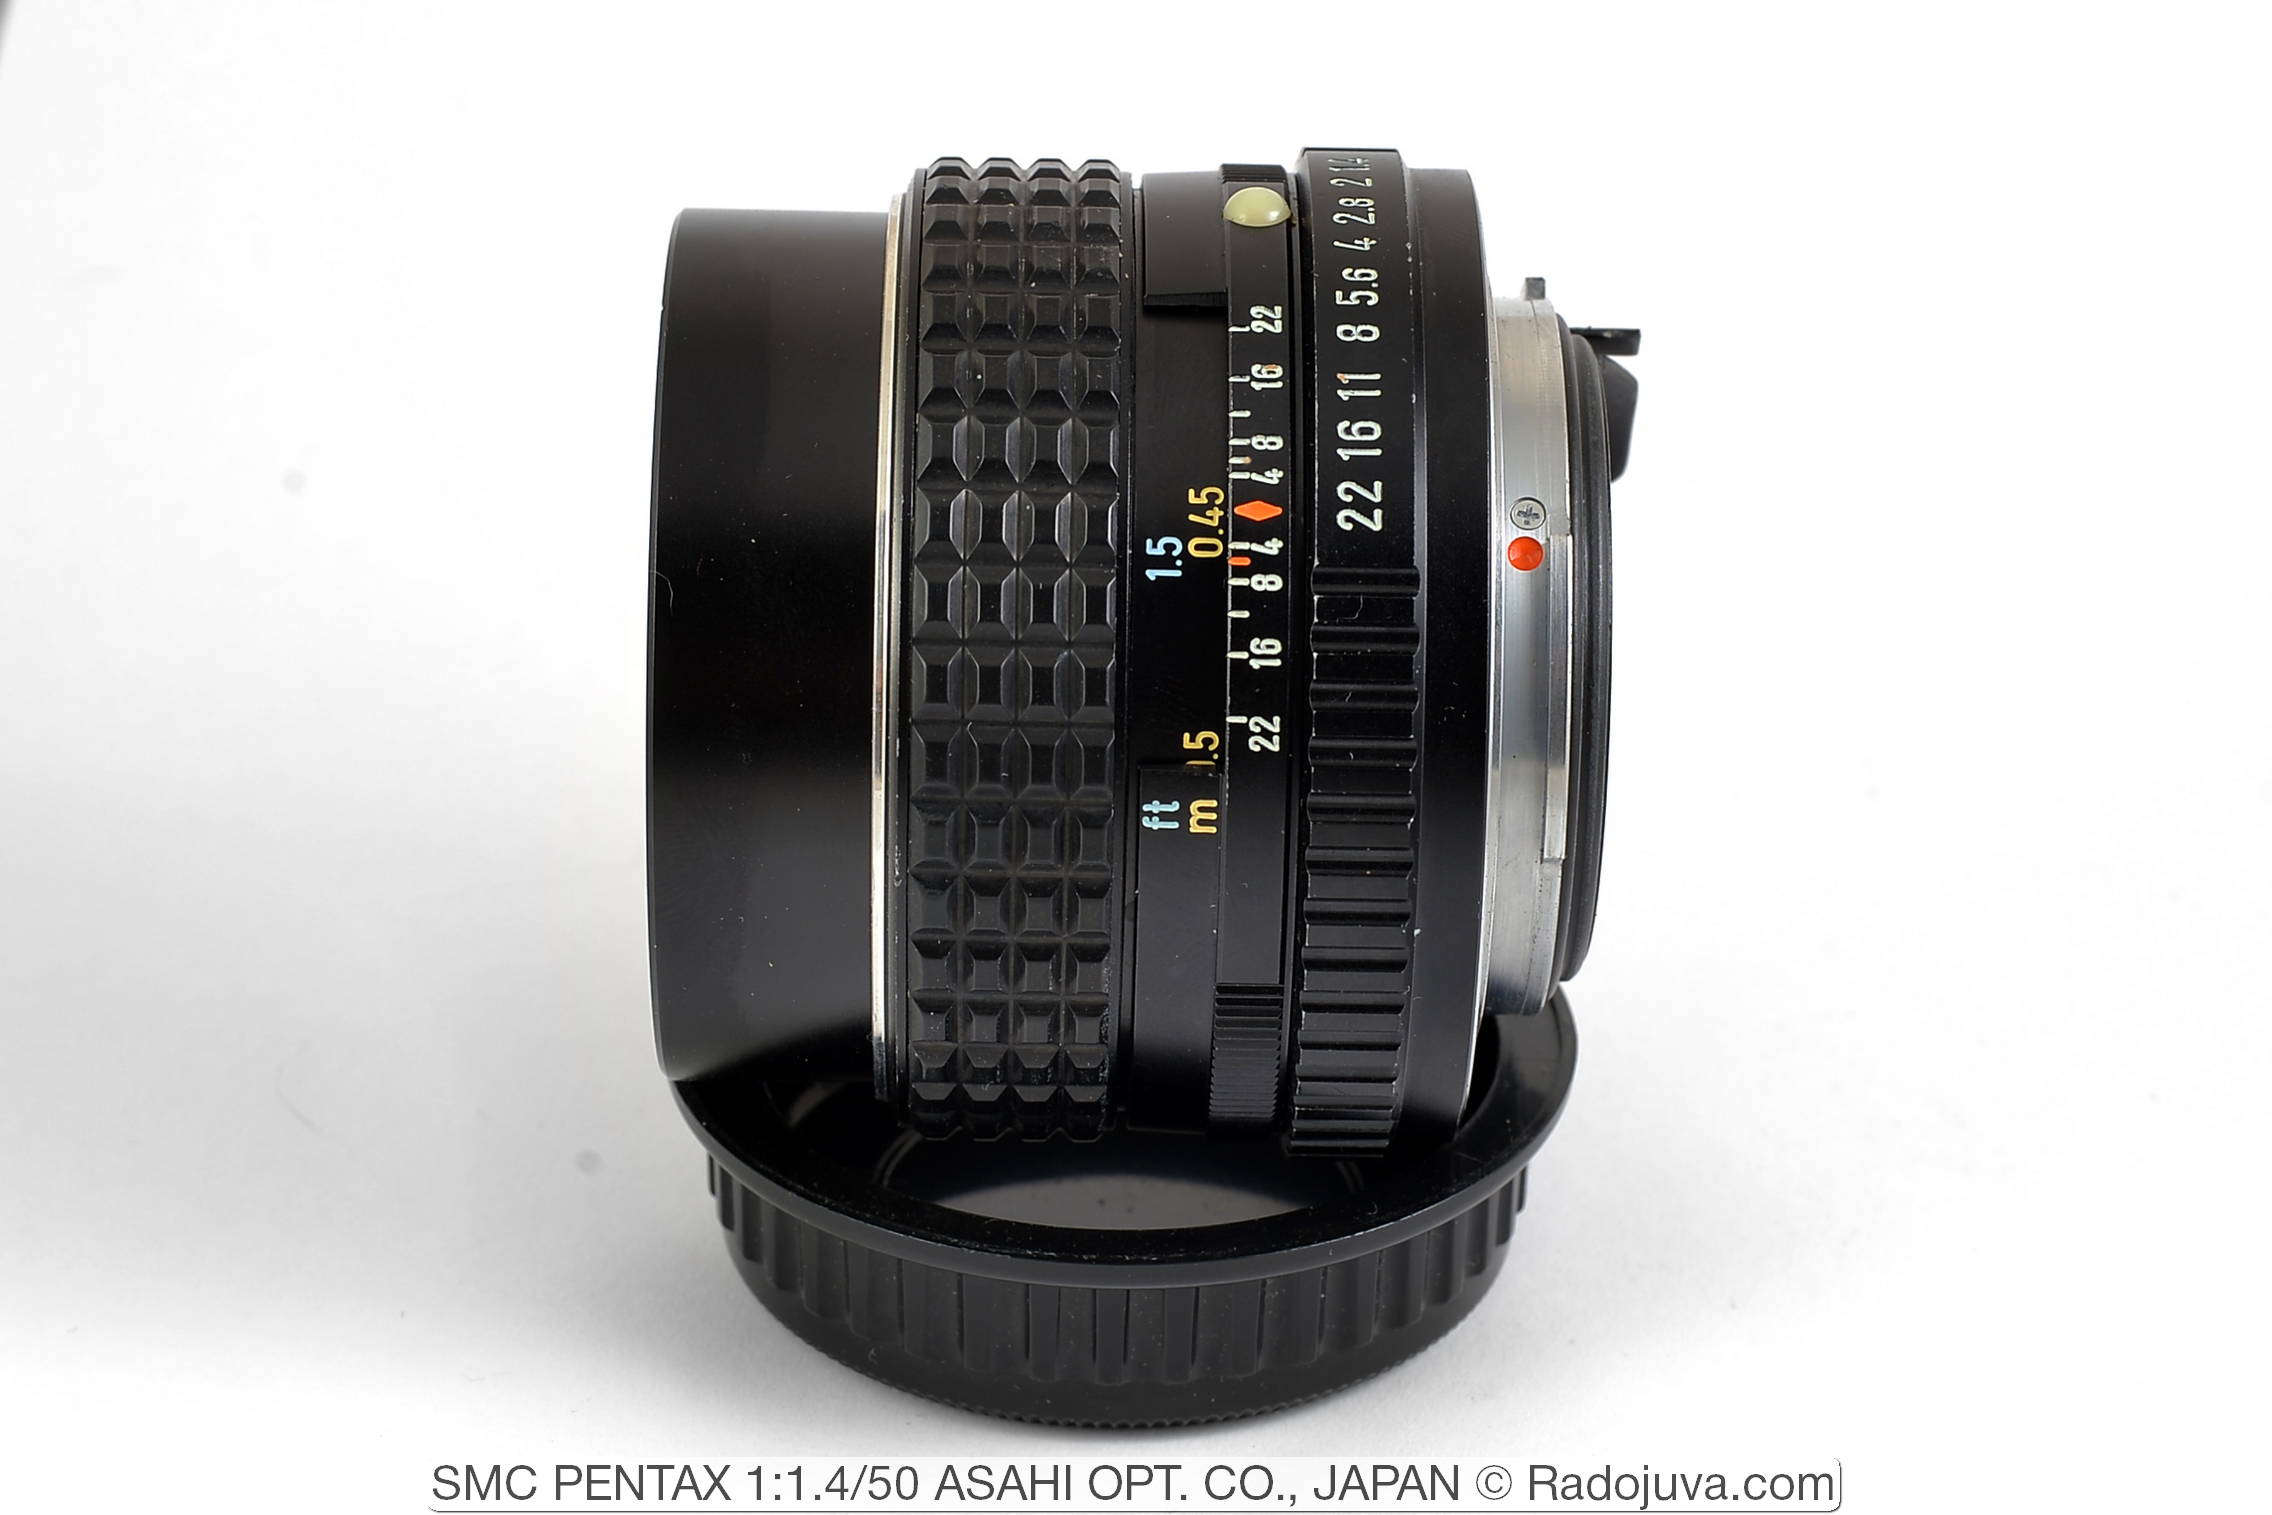 SMC PENTAX 1:1.4/50 ASAHI OPT. CO., JAPAN